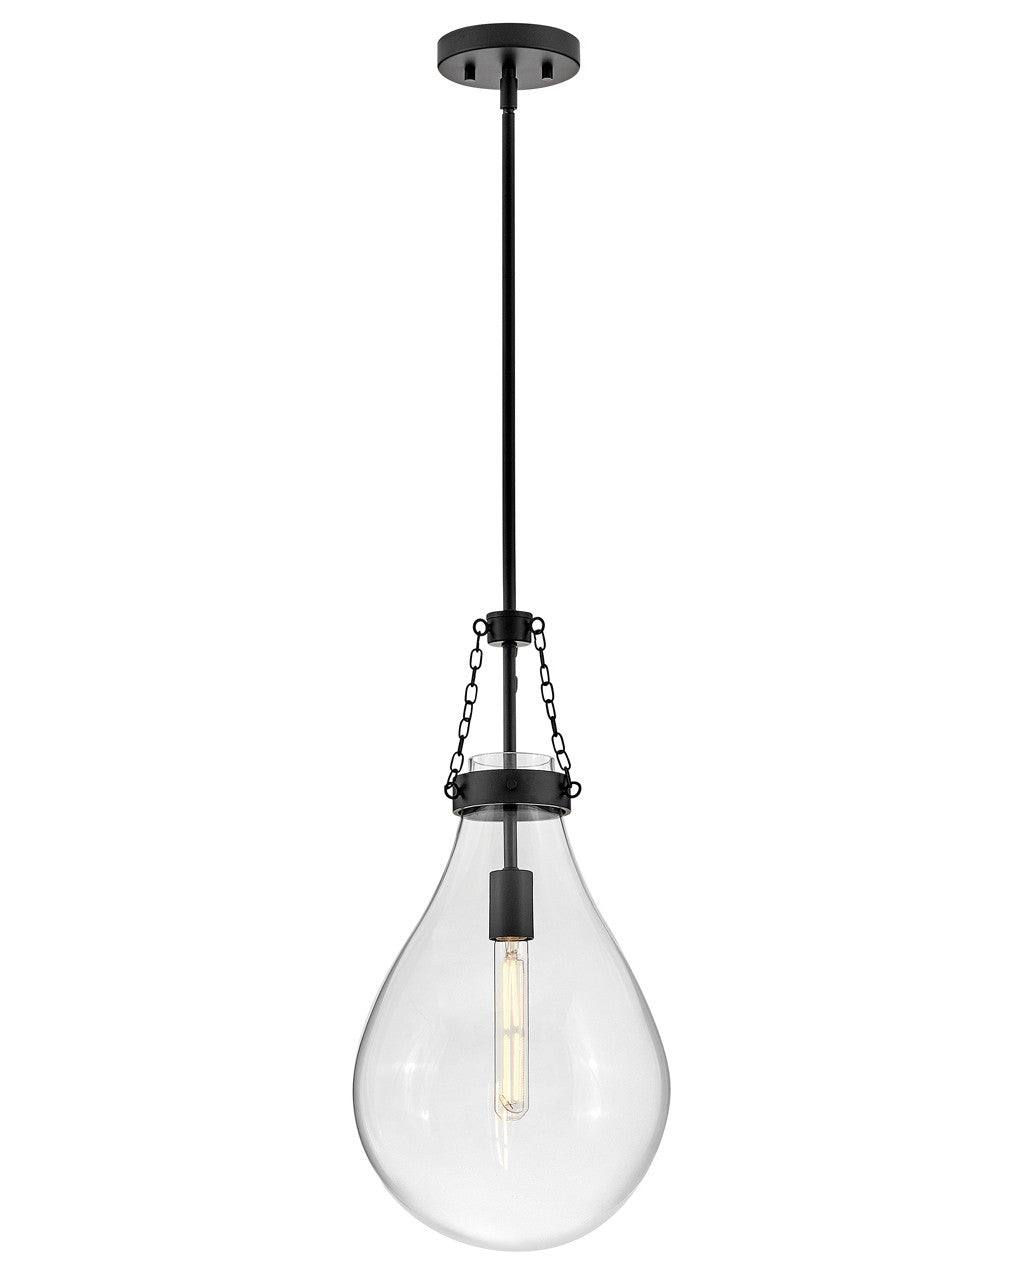 Eloise LED Pendant in Black by Hinkley Lighting